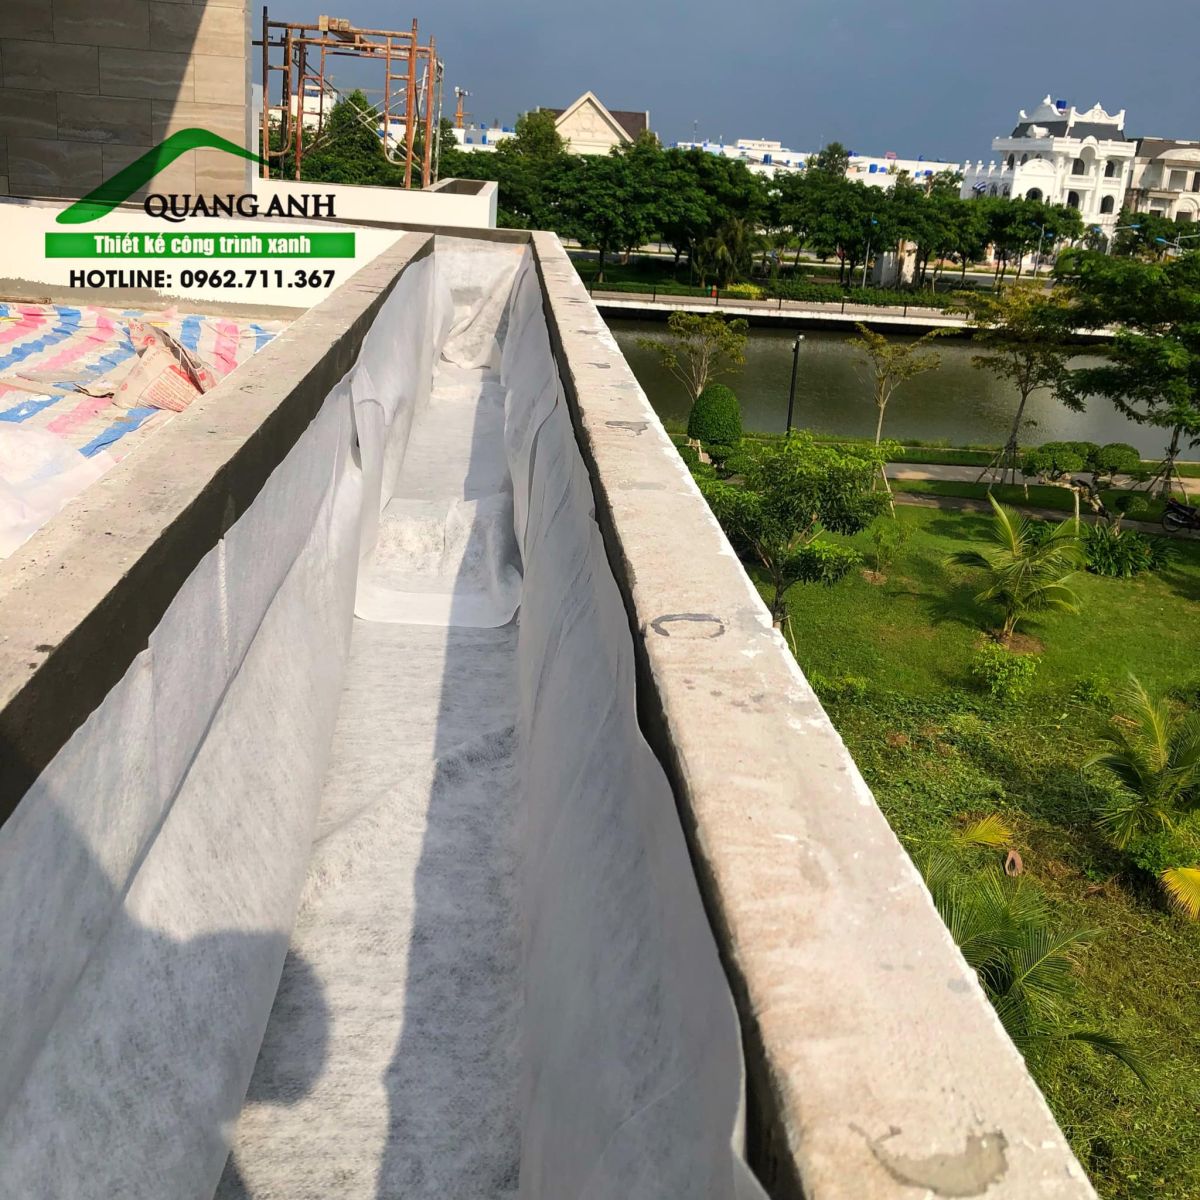  Vườn trên mái chống ngập úng với vỉ thoát nước và vải địa kĩ thuật Quang Anh